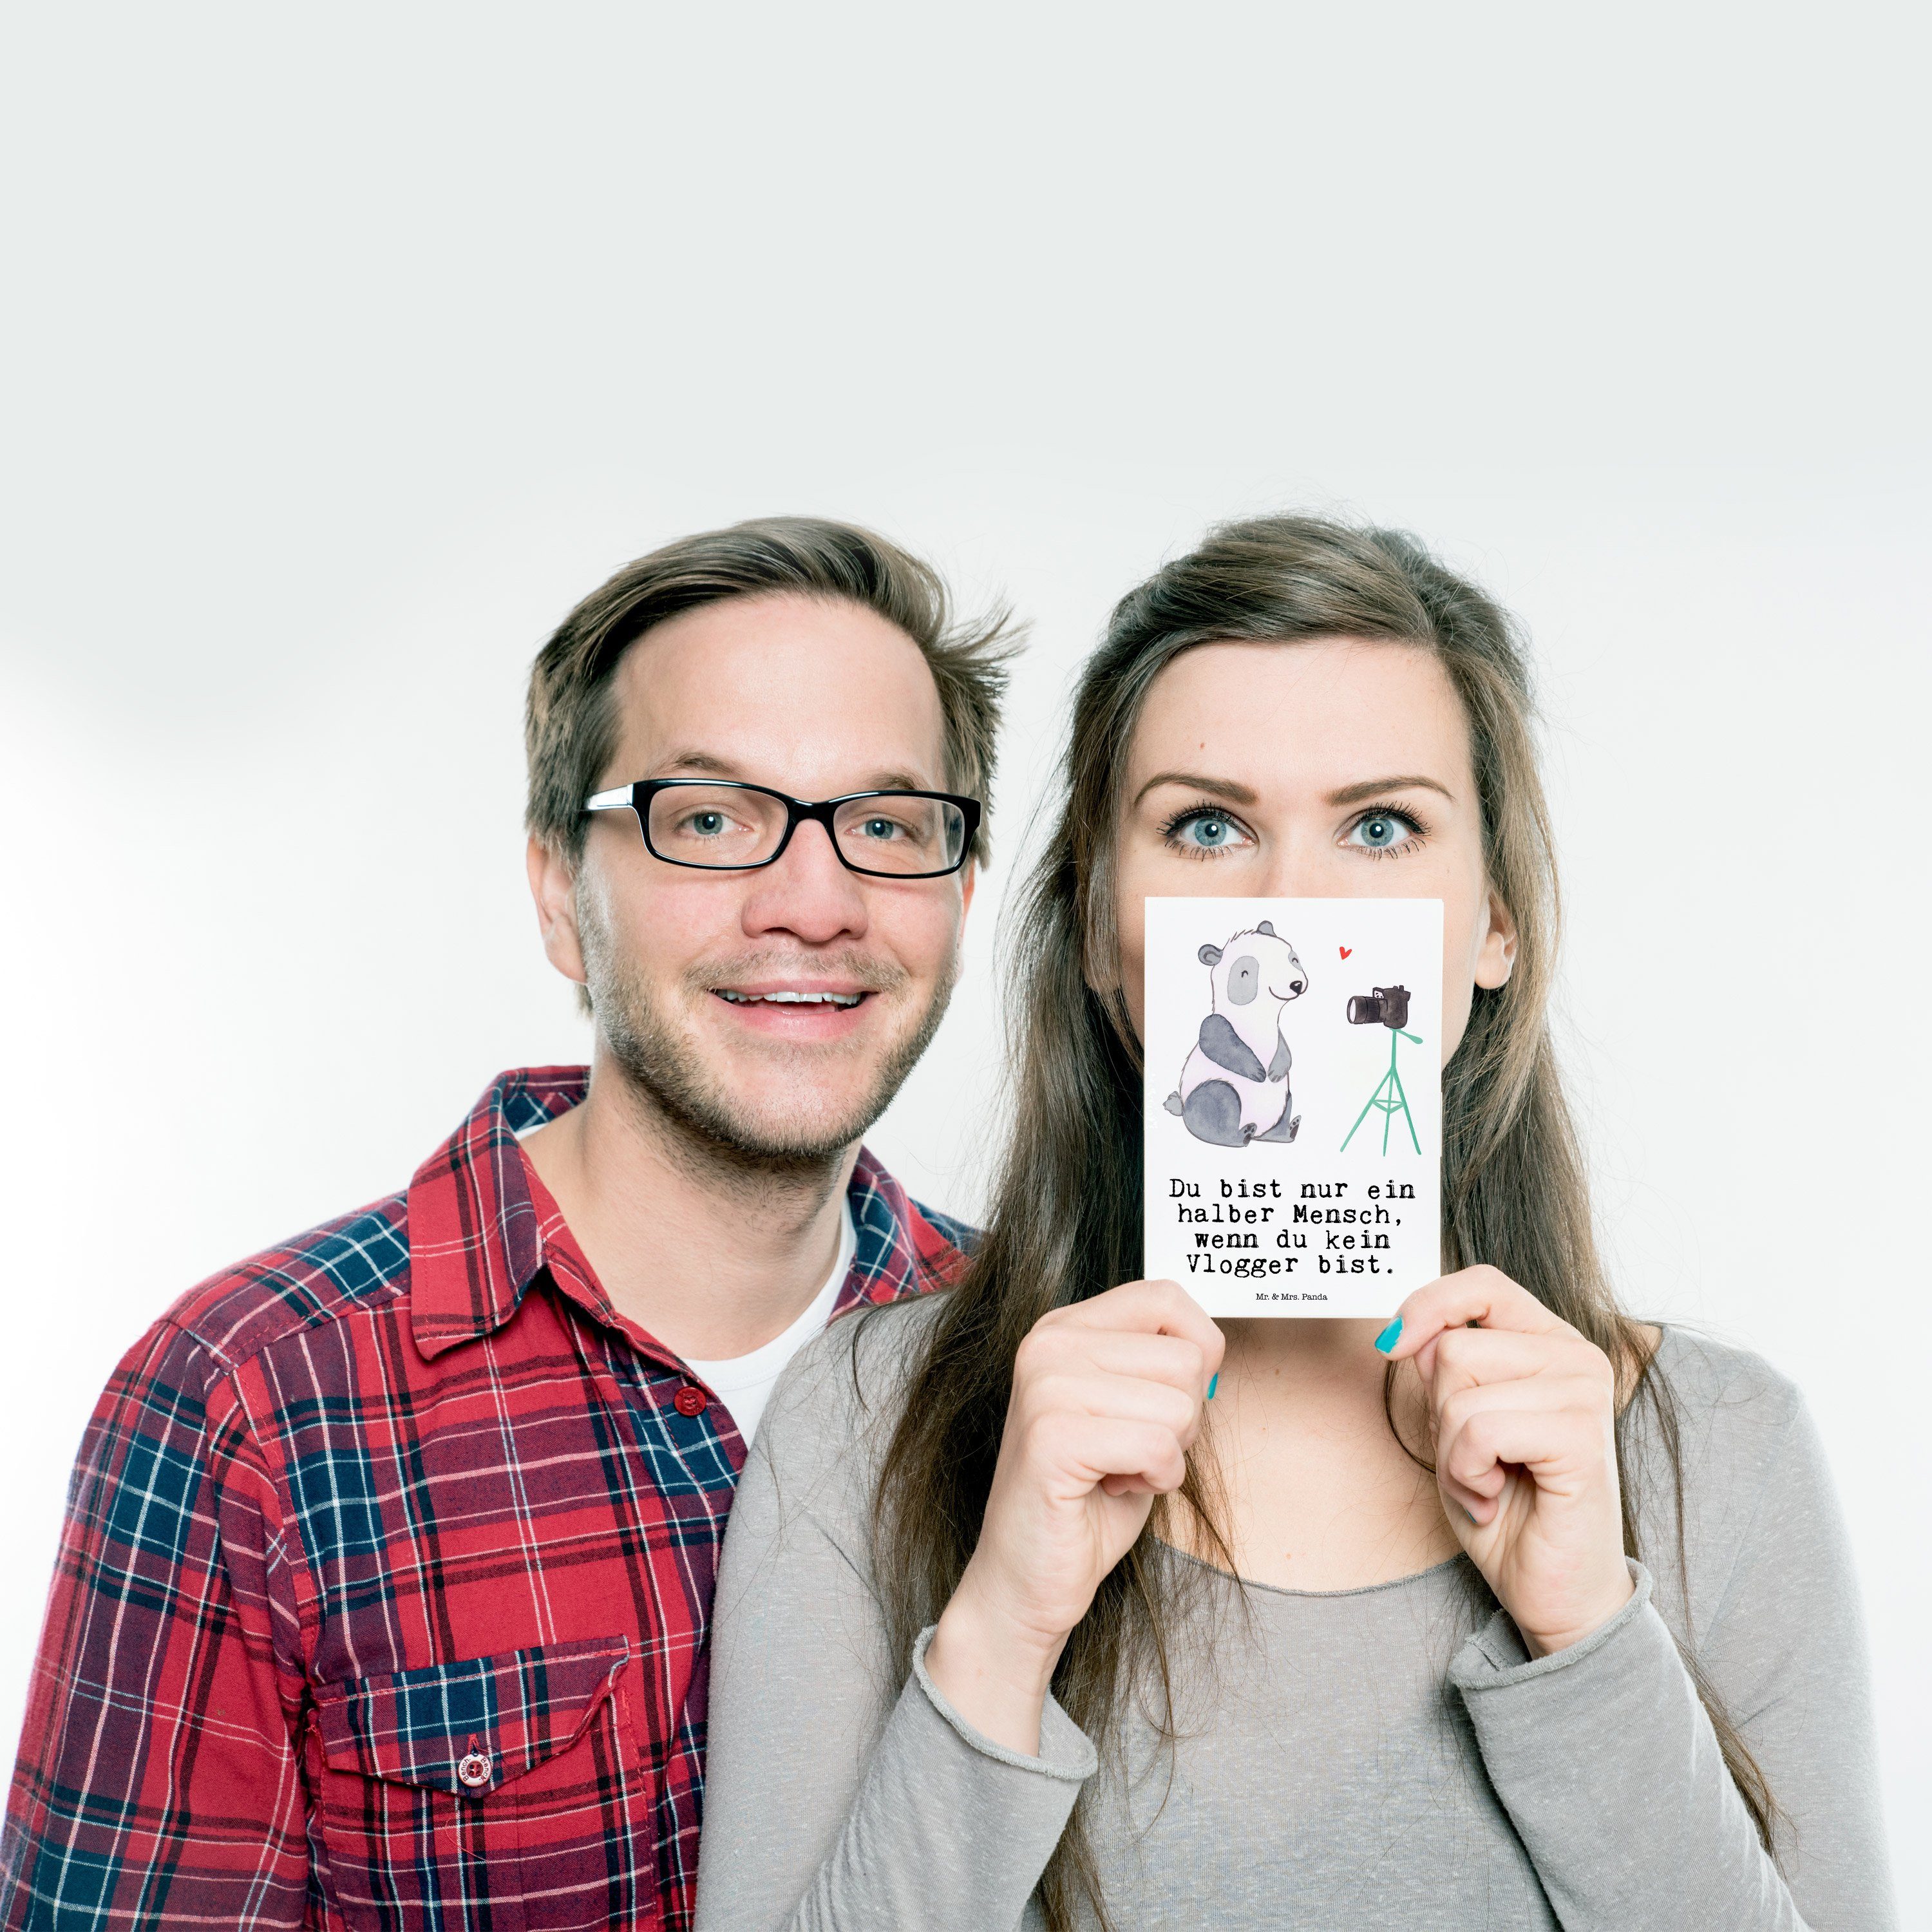 Mr. & Mrs. Firma, Kollege Geschenk, Weiß Panda mit Postkarte Vlogger - Geburtstagskarte, - Herz